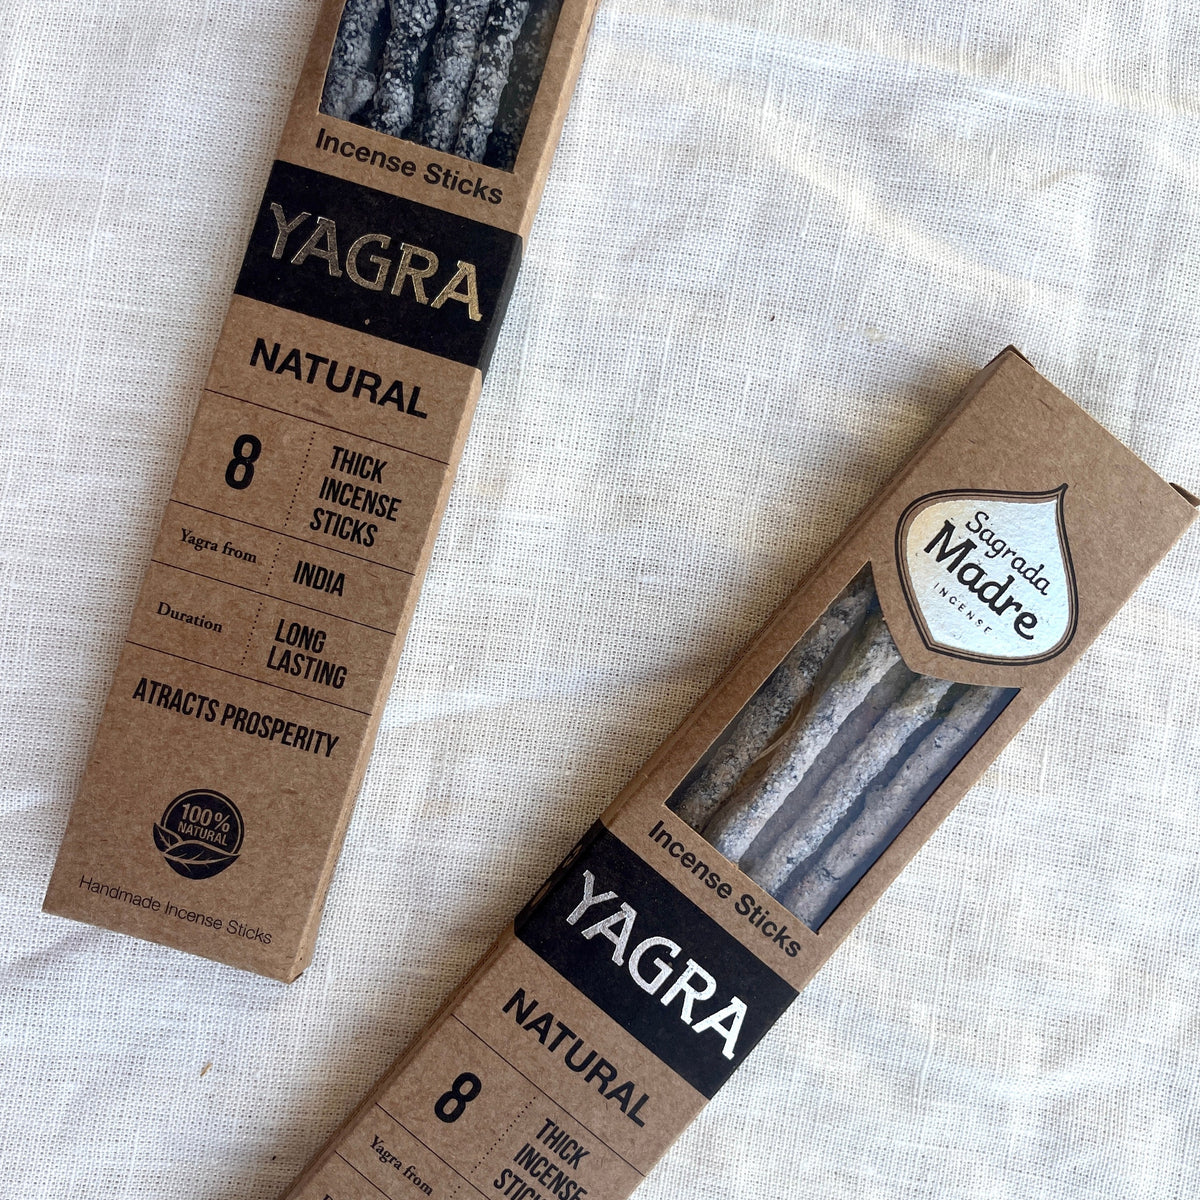 Yagra Natural Resin Incense Sticks